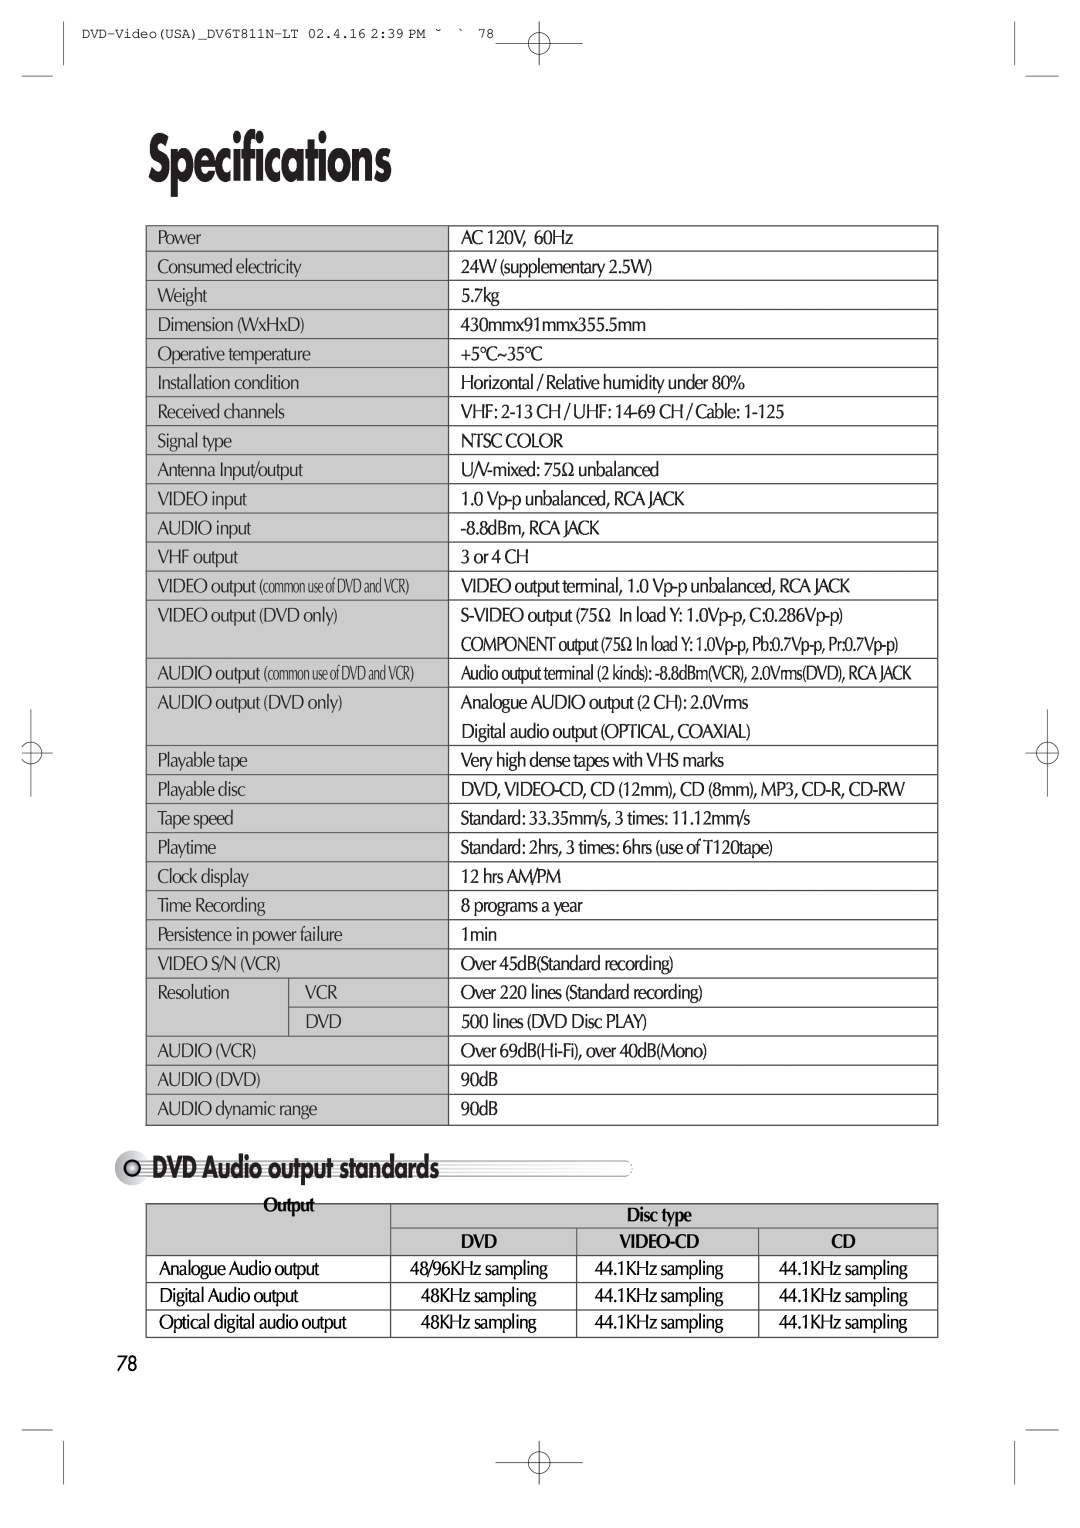 Daewoo DV6T811N owner manual Specifications, DVDAudiooutputstandards, Output 